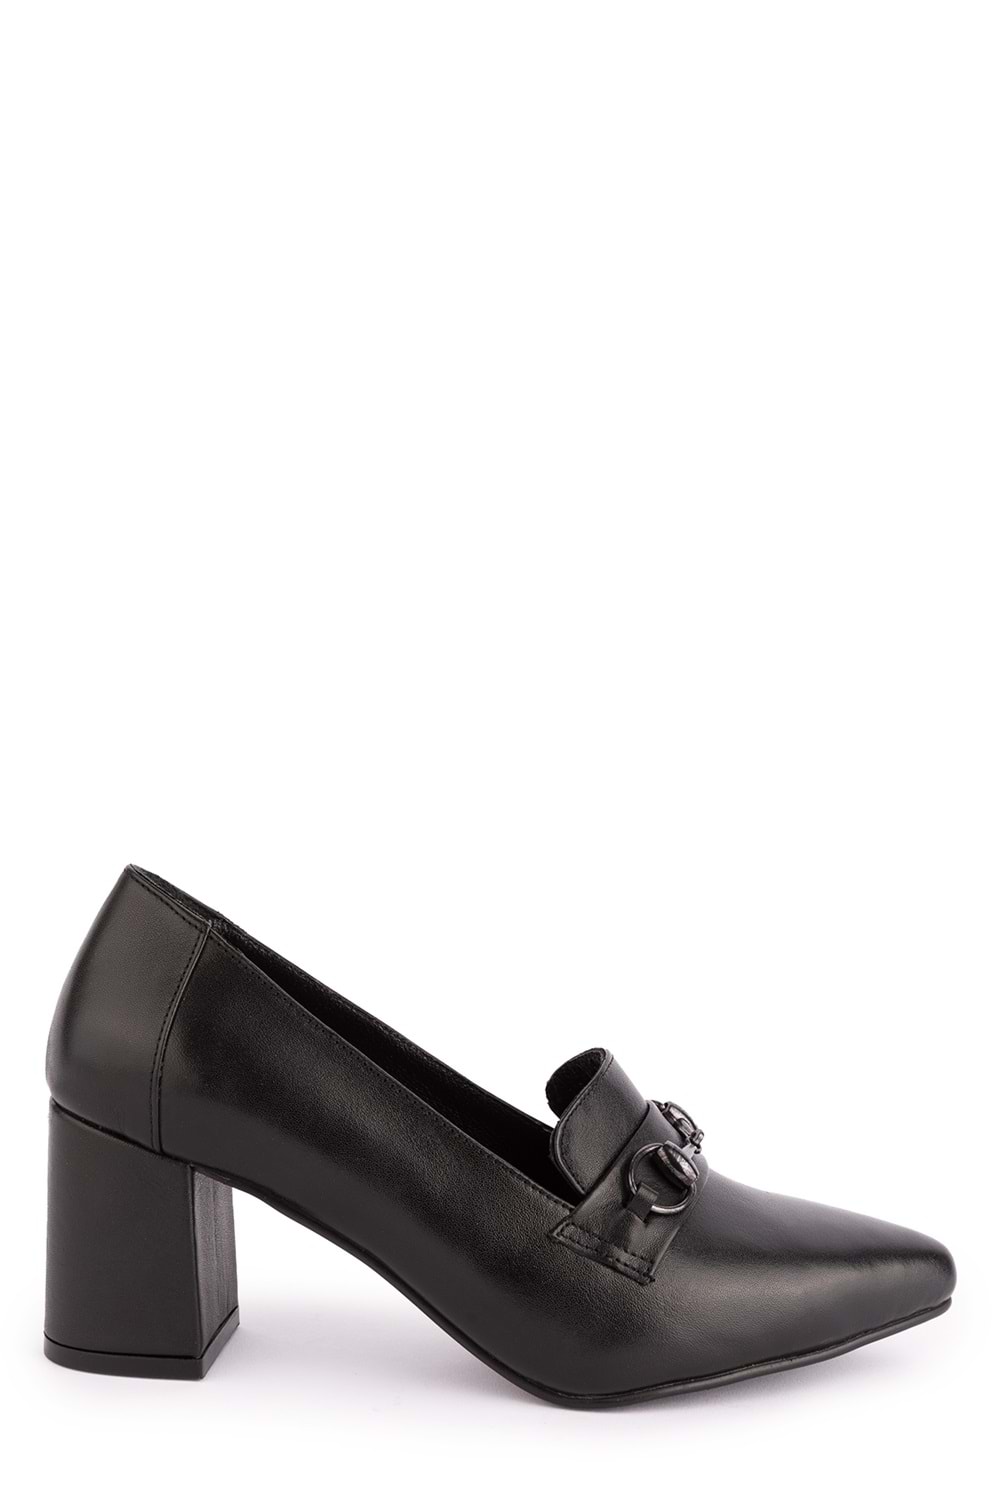 Gondol Kadın Hakiki Deri Klasik Topuklu Toka Detaylı Ayakkabı şhn.956 - Siyah - 34